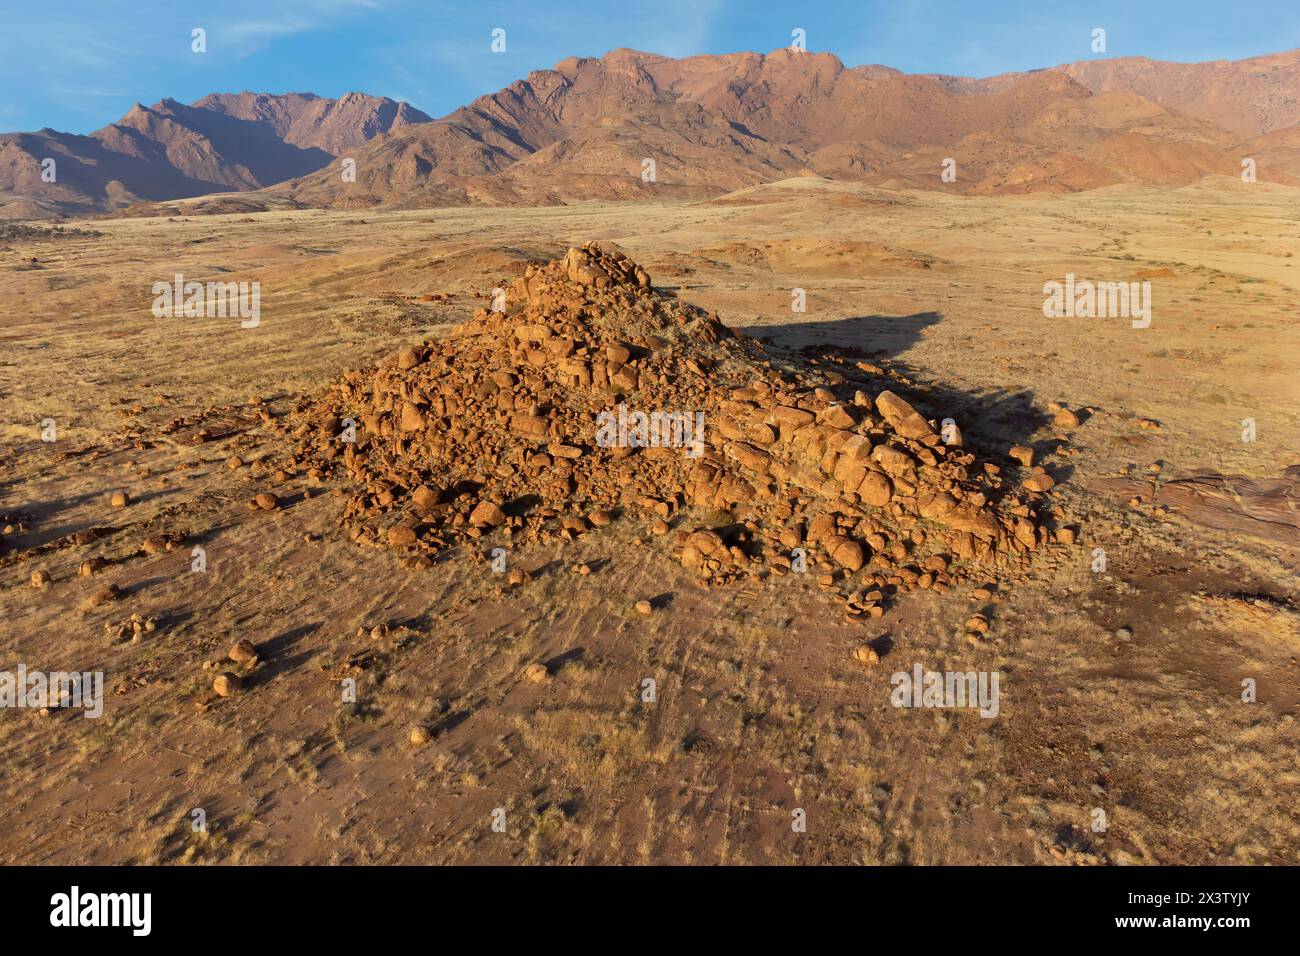 Paysage désertique pittoresque avec des rochers et des prairies arides, montagne Brandberg, Namibie Banque D'Images